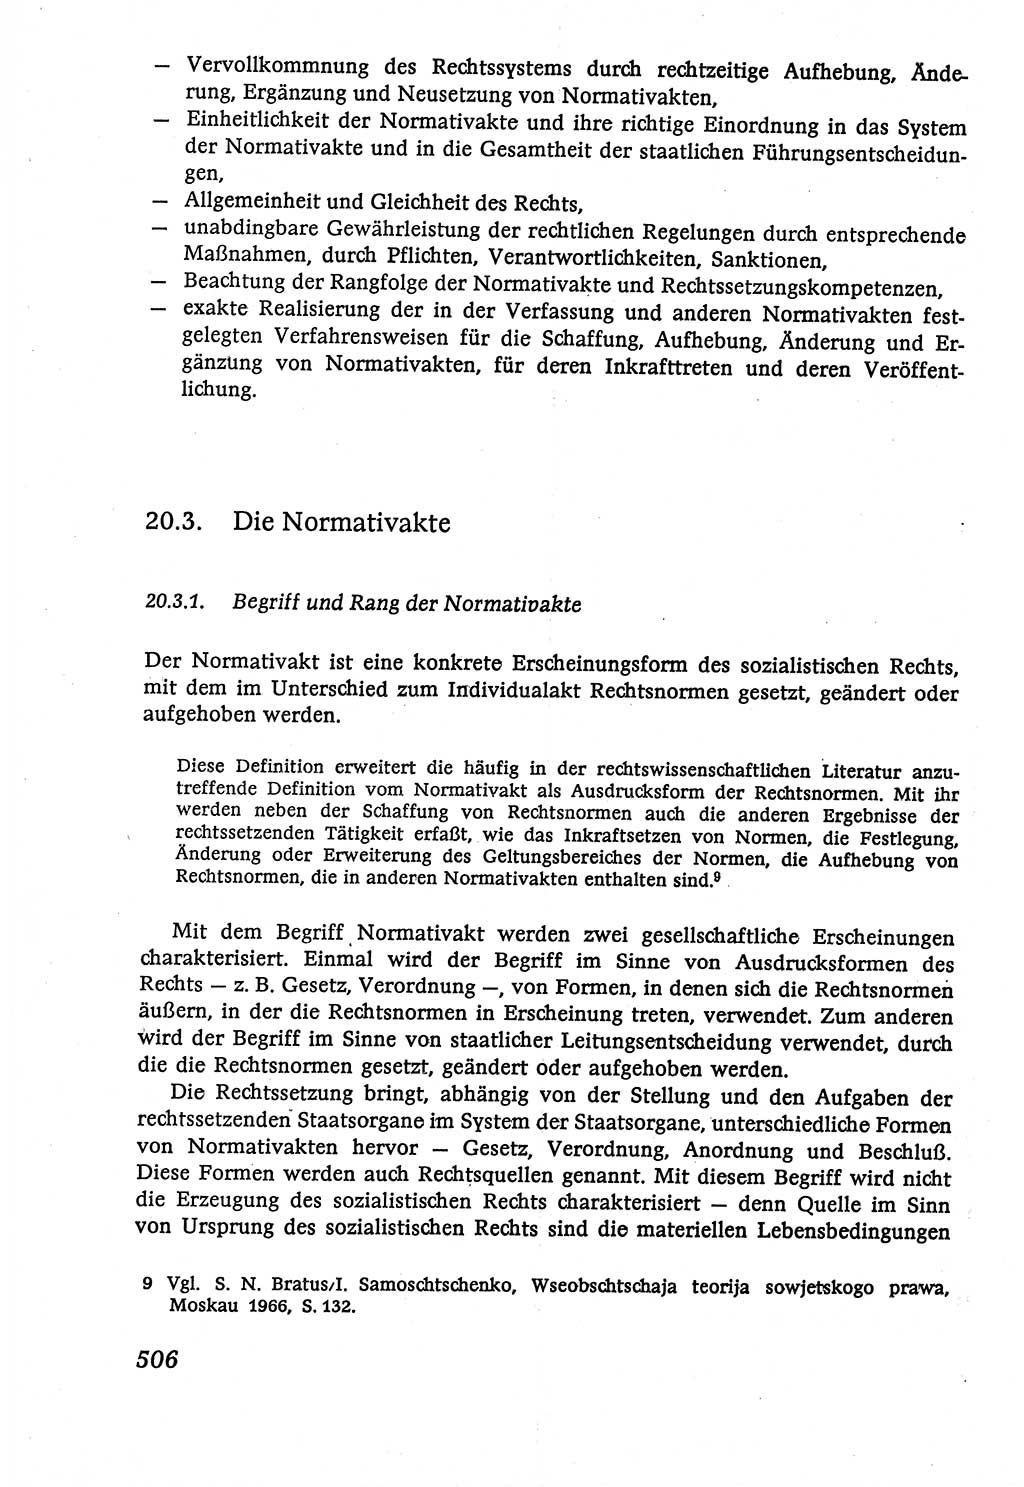 Marxistisch-leninistische (ML) Staats- und Rechtstheorie [Deutsche Demokratische Republik (DDR)], Lehrbuch 1980, Seite 506 (ML St.-R.-Th. DDR Lb. 1980, S. 506)